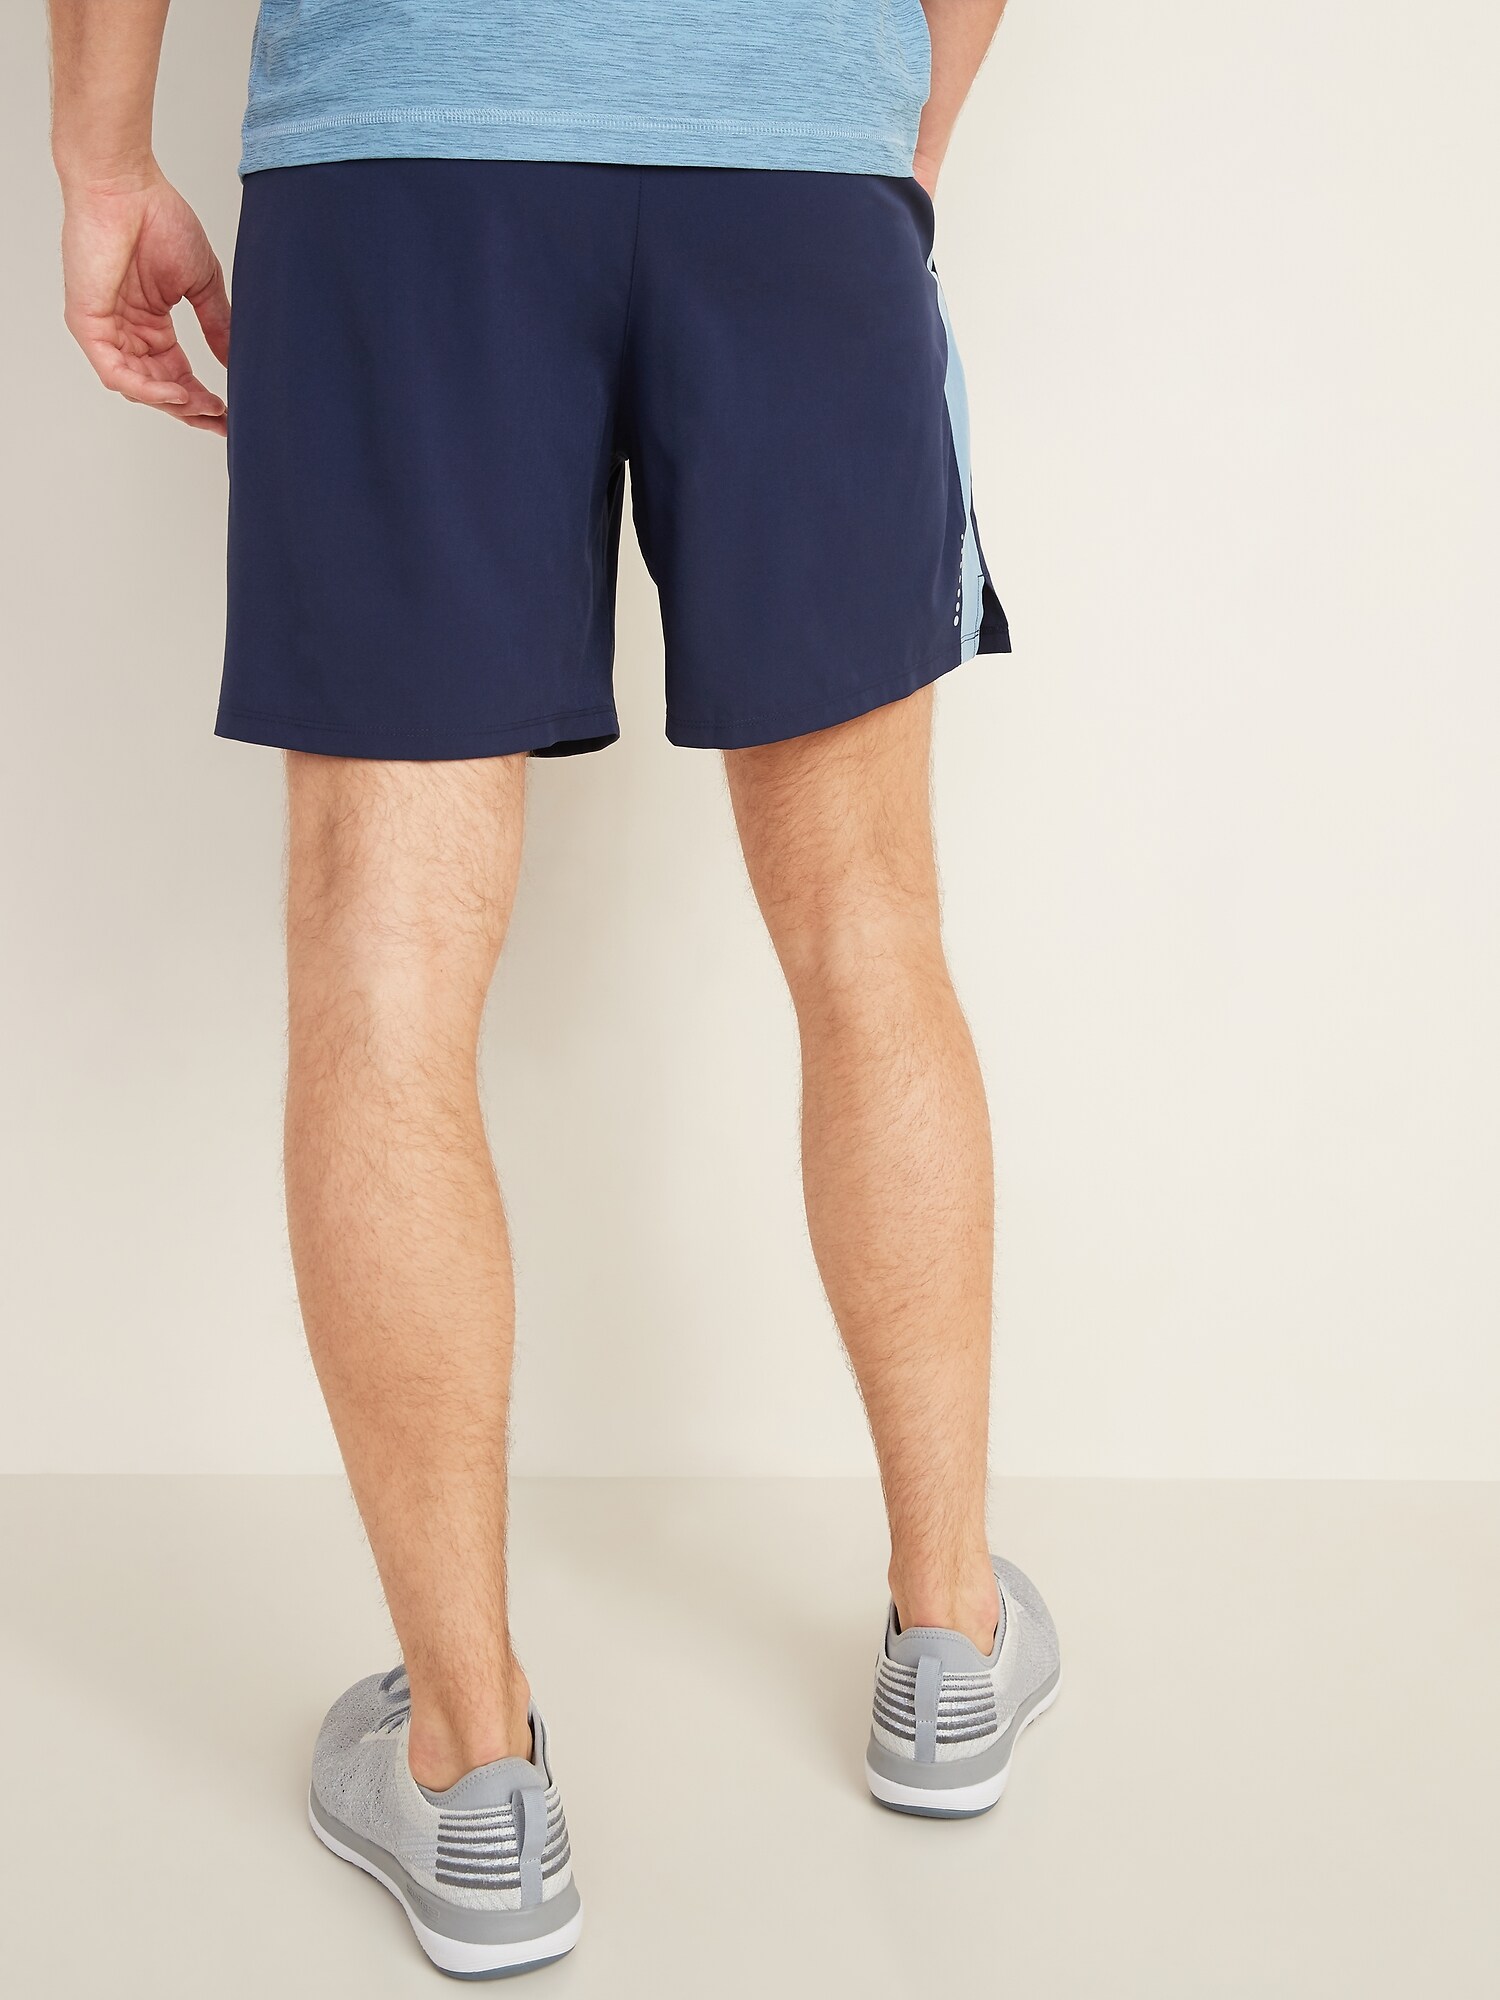 men's 7 inch running shorts